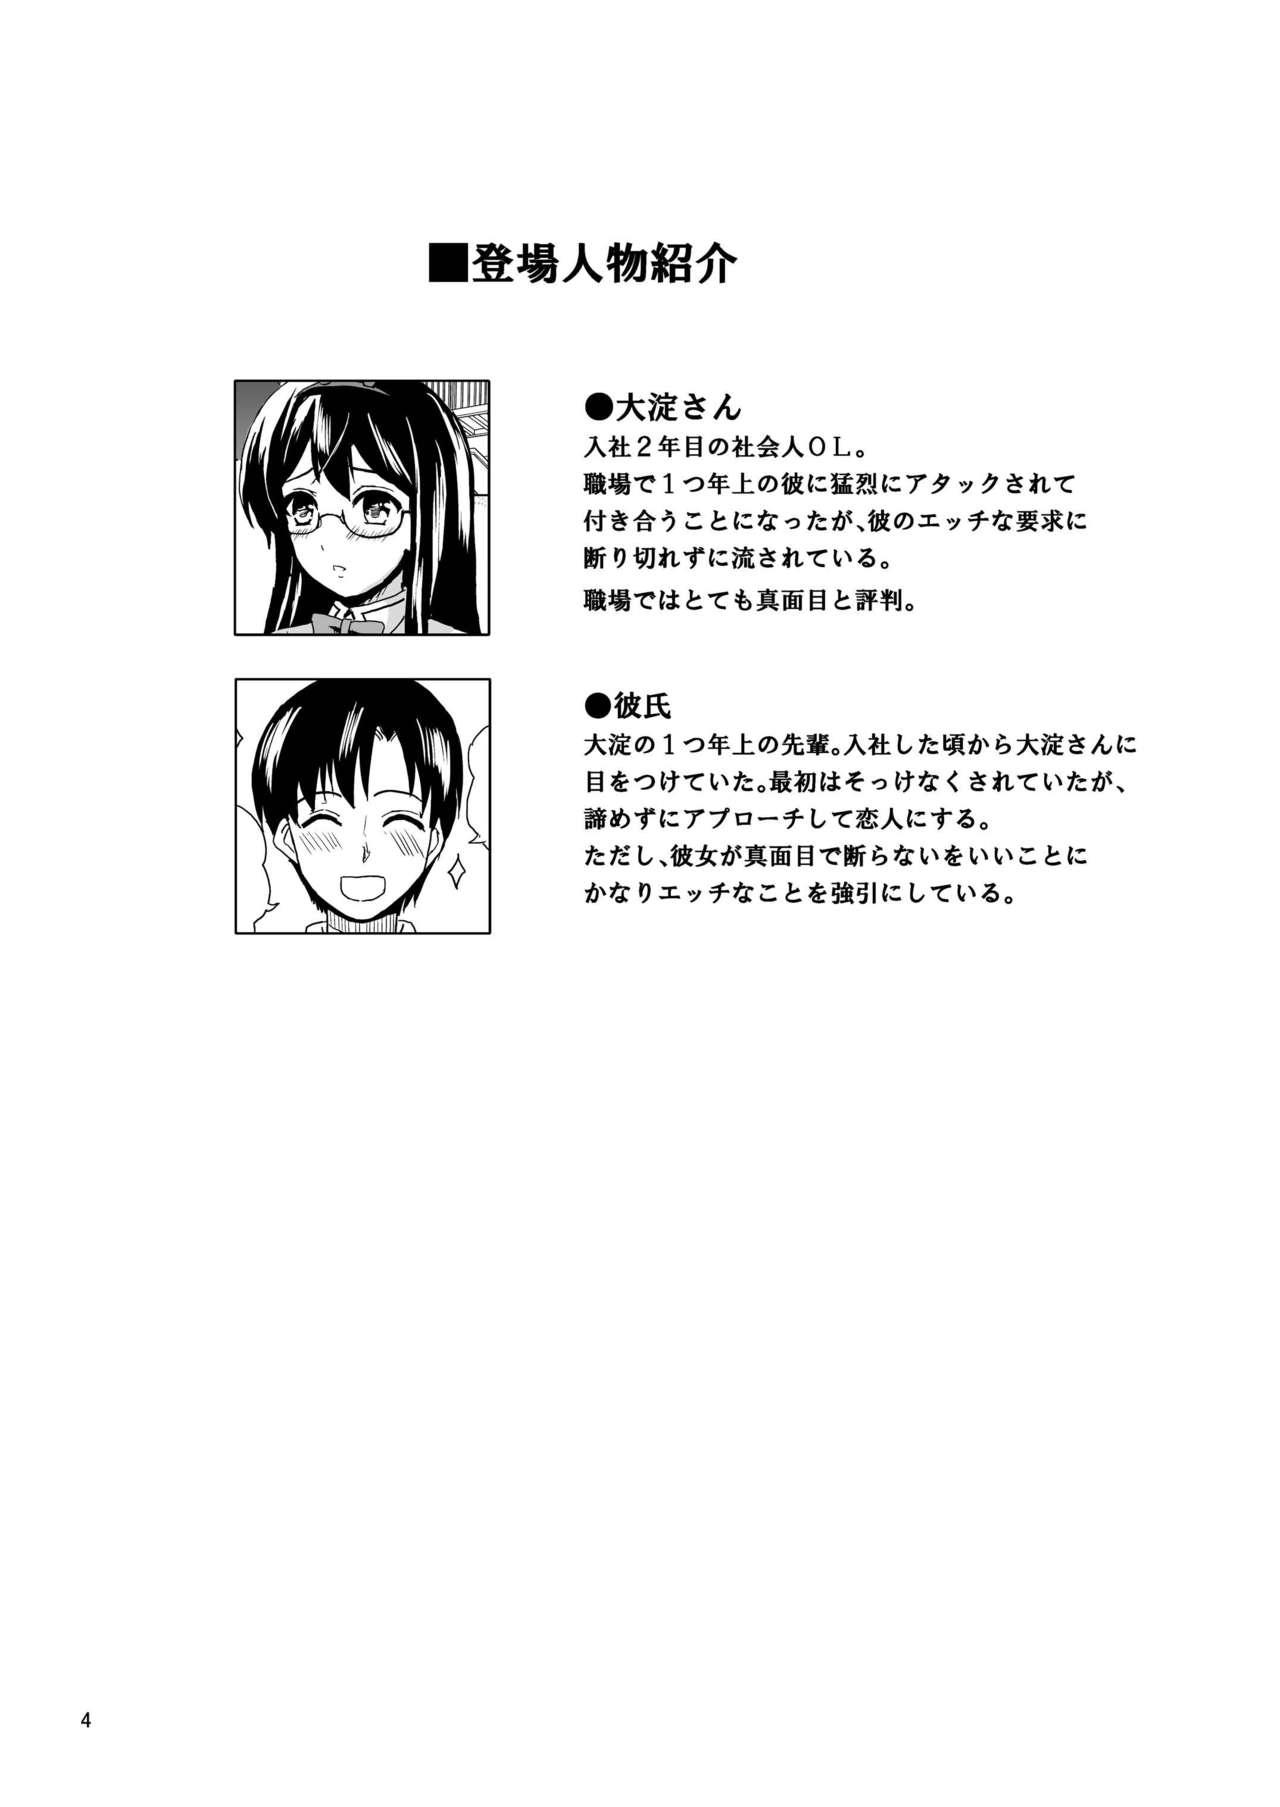 Forwomen Ecchi na Usagi-san wa Suki desu ka? - Kantai collection Storyline - Page 4